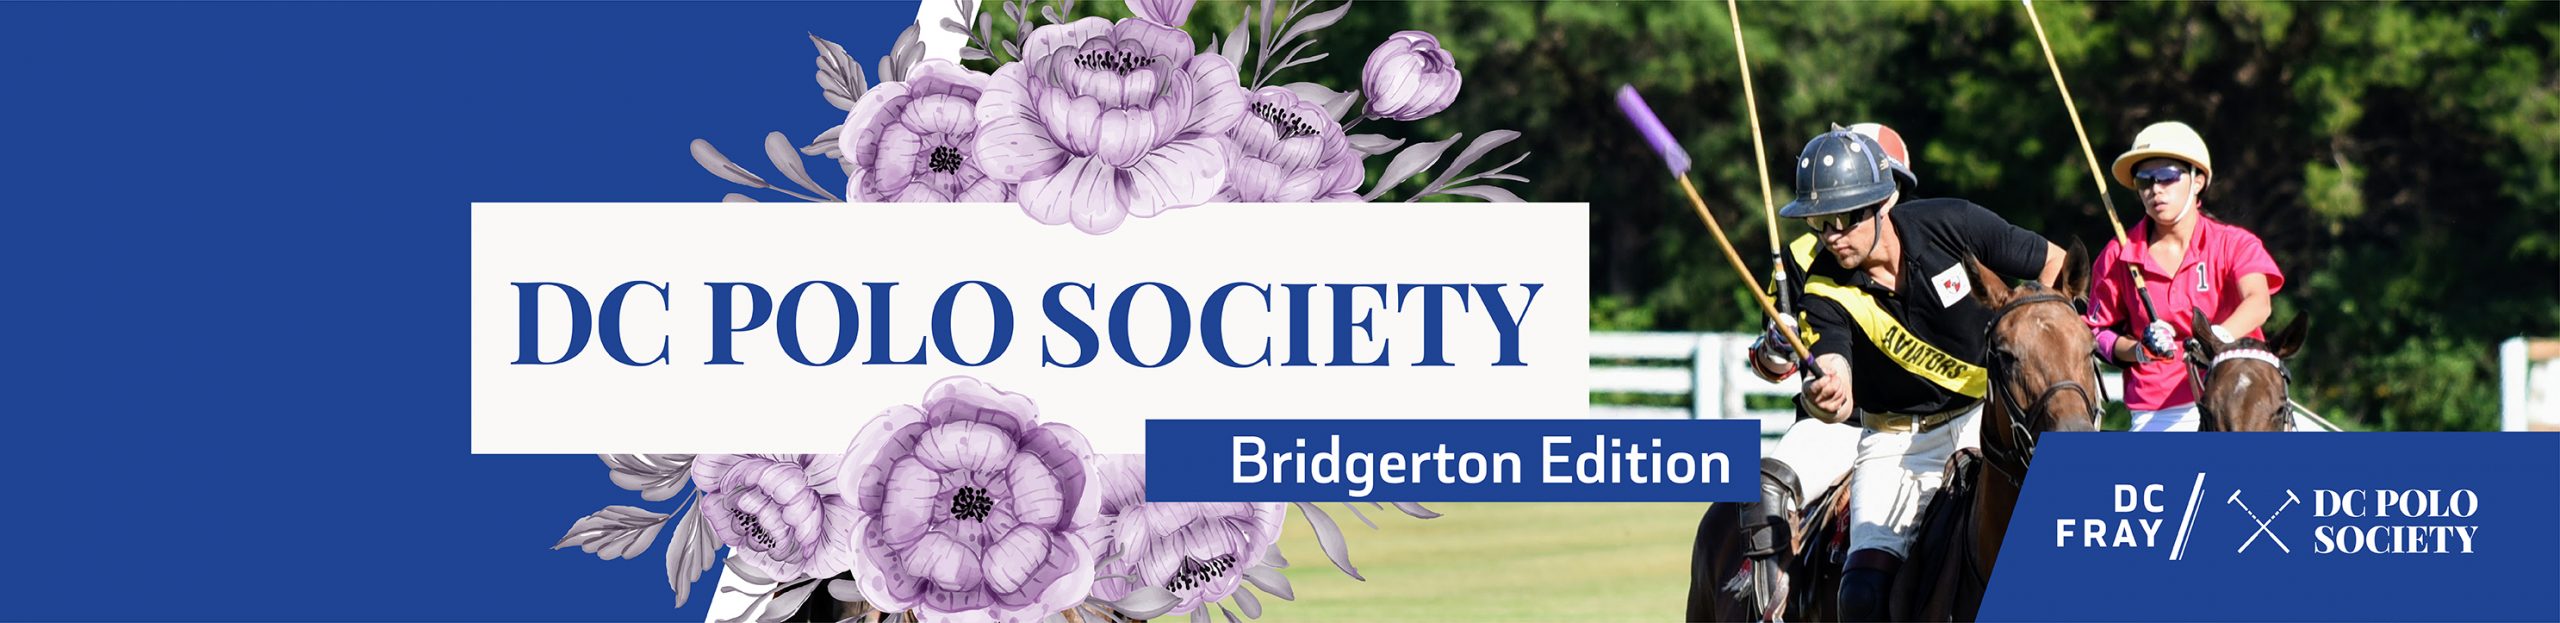 DC Polo Society - Bridgerton Edition